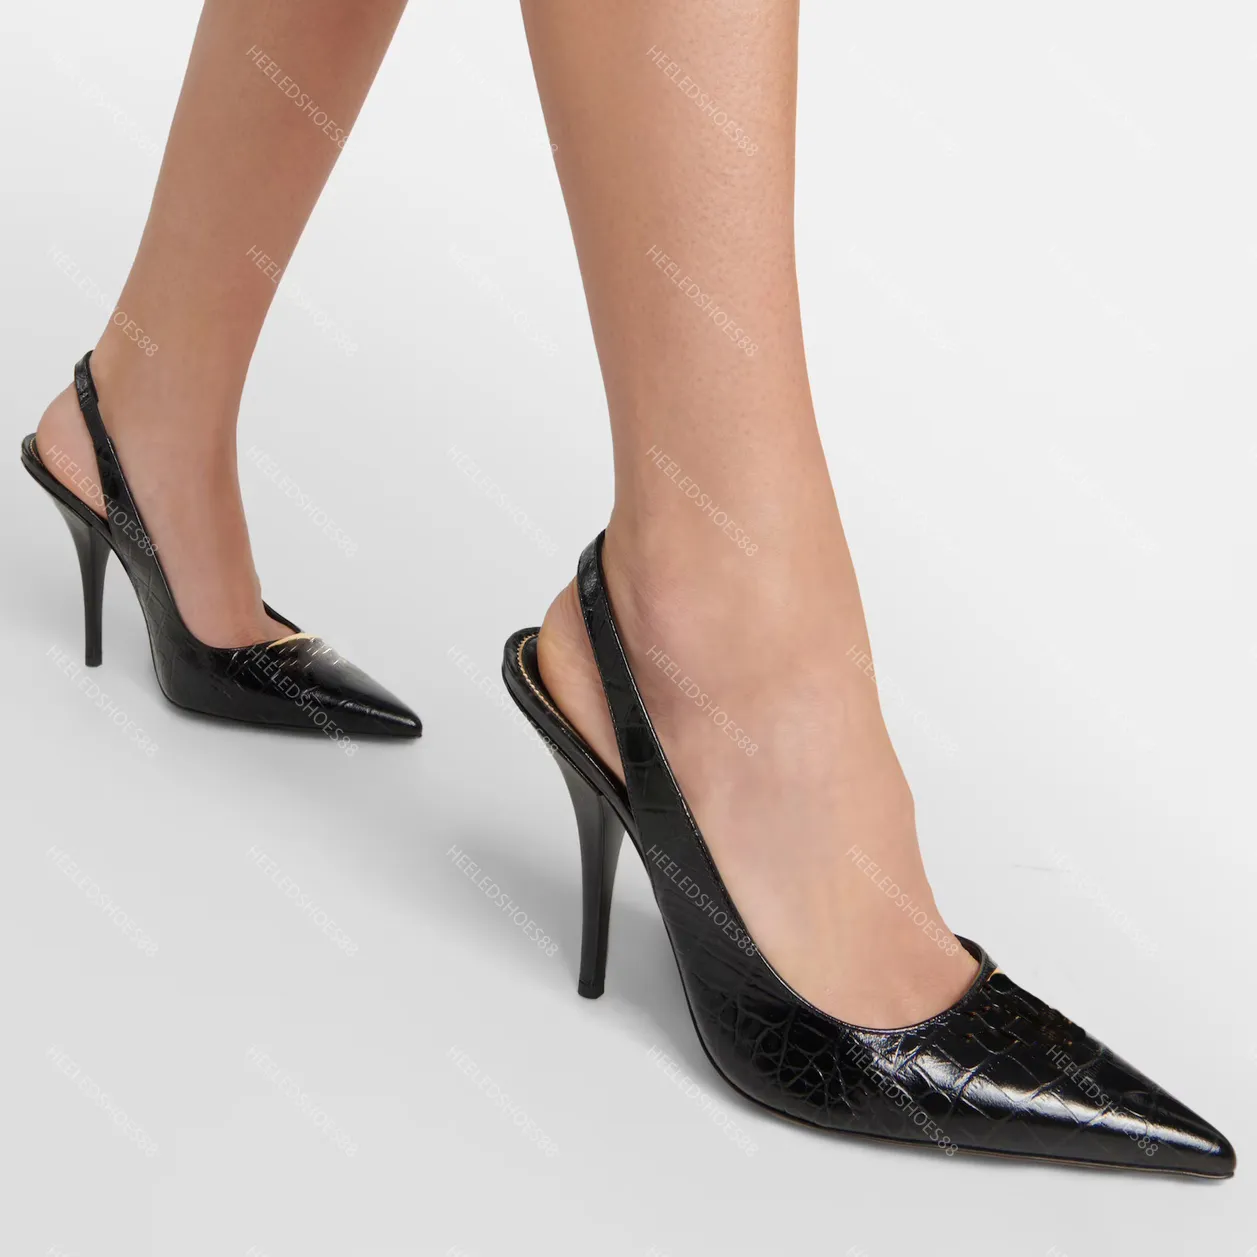 Elbise Ayakkabı Tasarımcıları Sandallar Kadın Slingbacks Moda Rhinestone Tokalı Satin Timsah Desenli Cowhide 10cm Yüksek Topuklu Sandal Kadın Ayakkabı 35-42